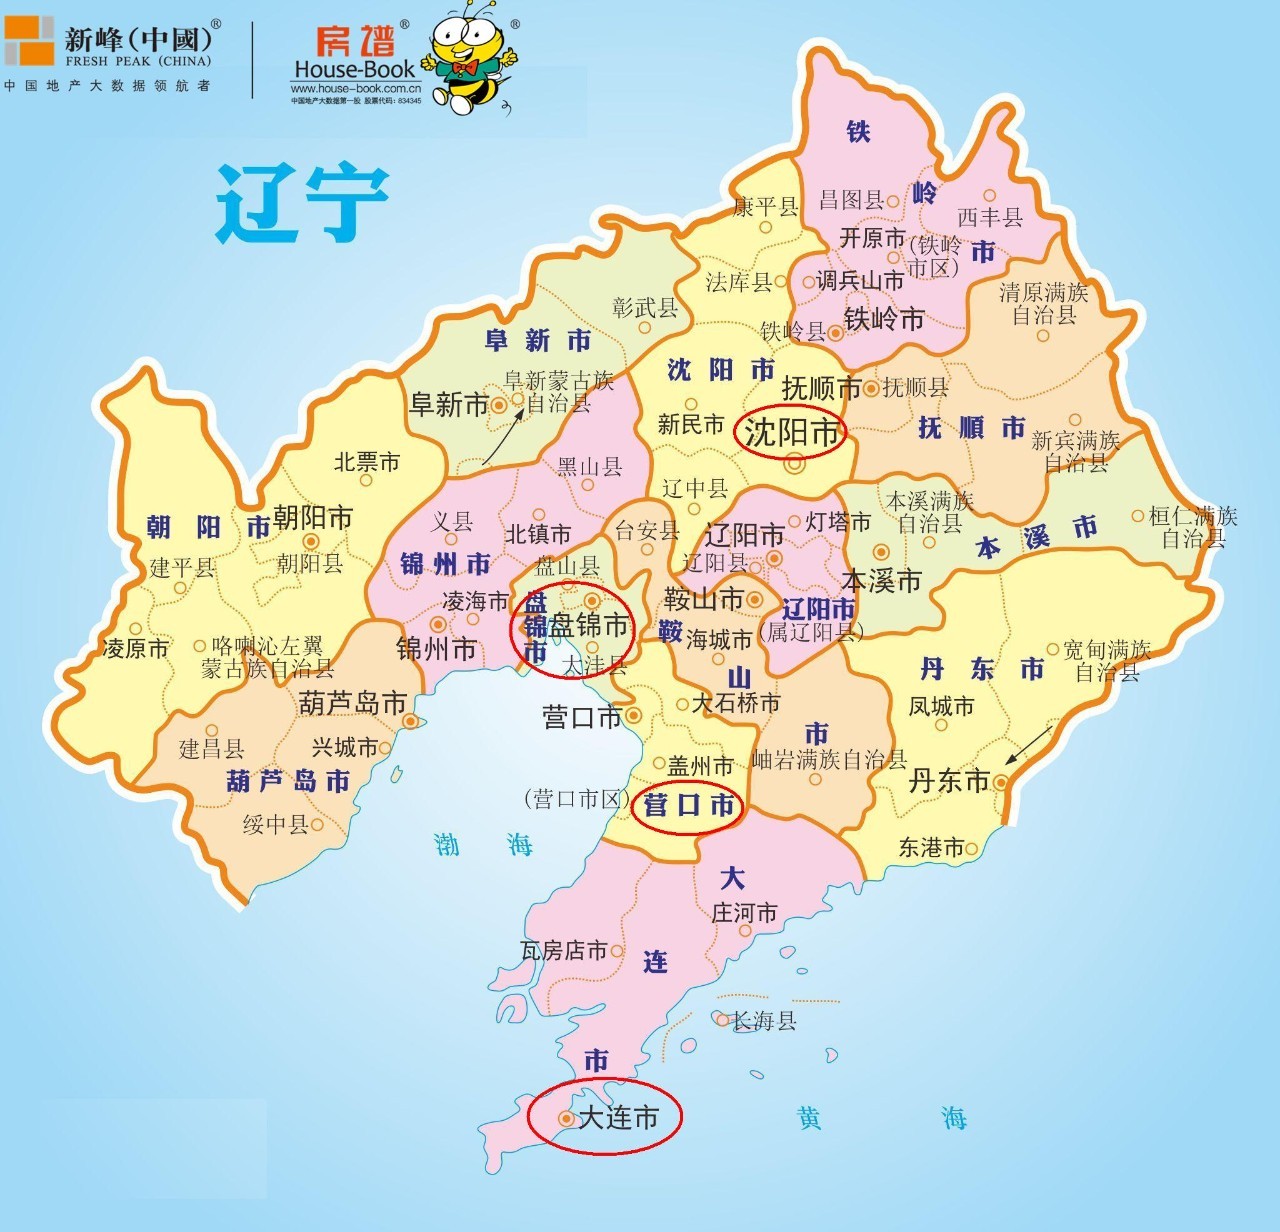 查看辽宁省地图 放大图片